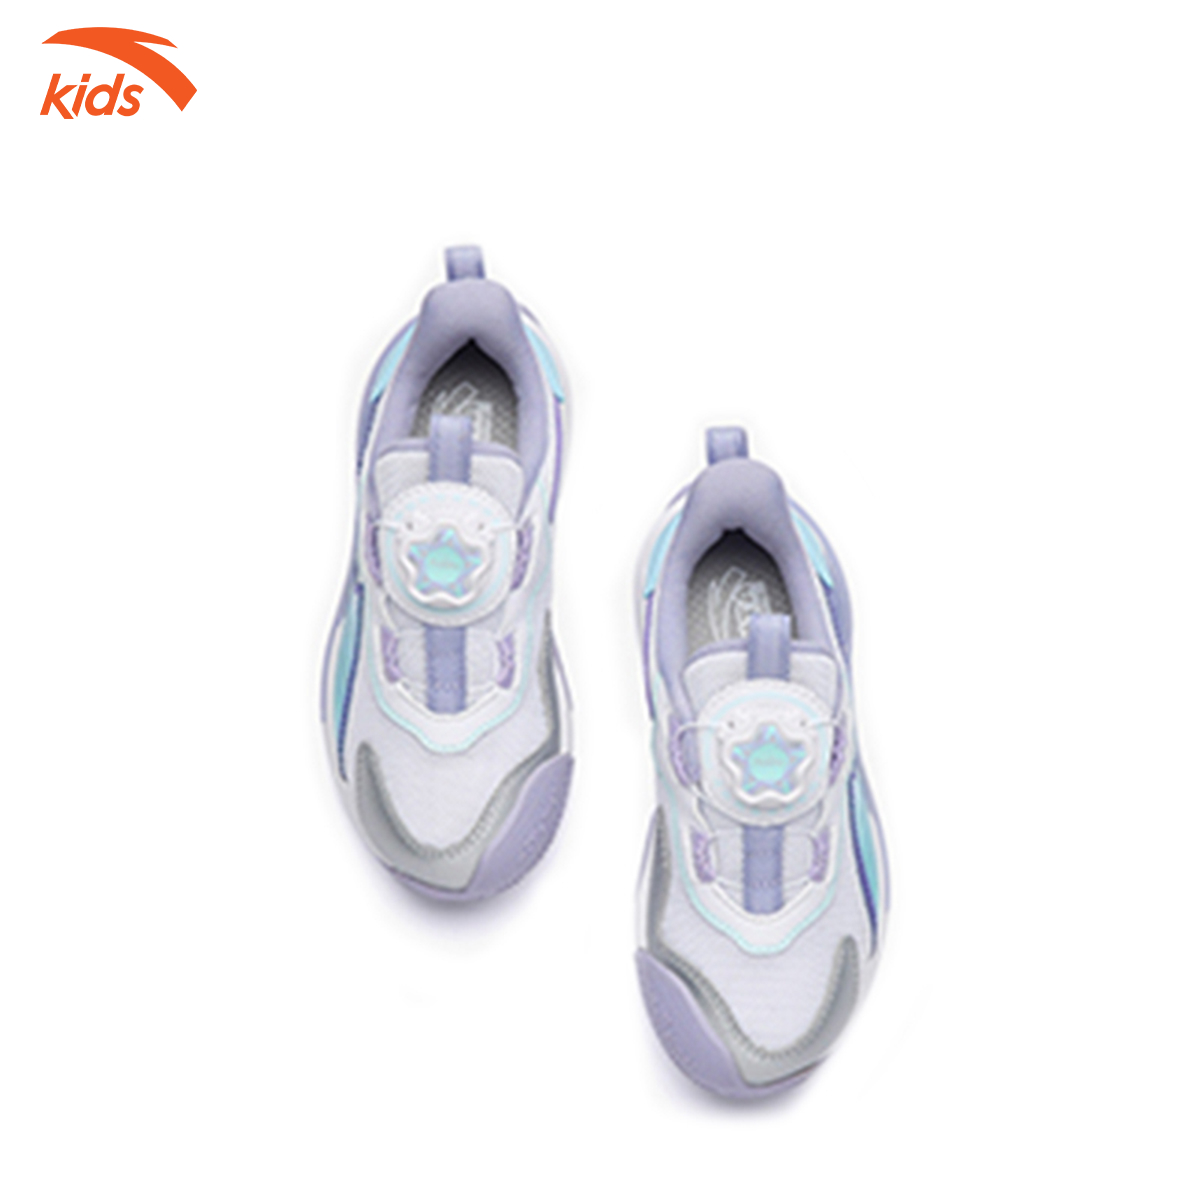 Giày thể thao bé gái Anta Kids, dòng chạy, thiết kế khóa habu tiện lợi, mặt lưới thoáng khí 322239905-3